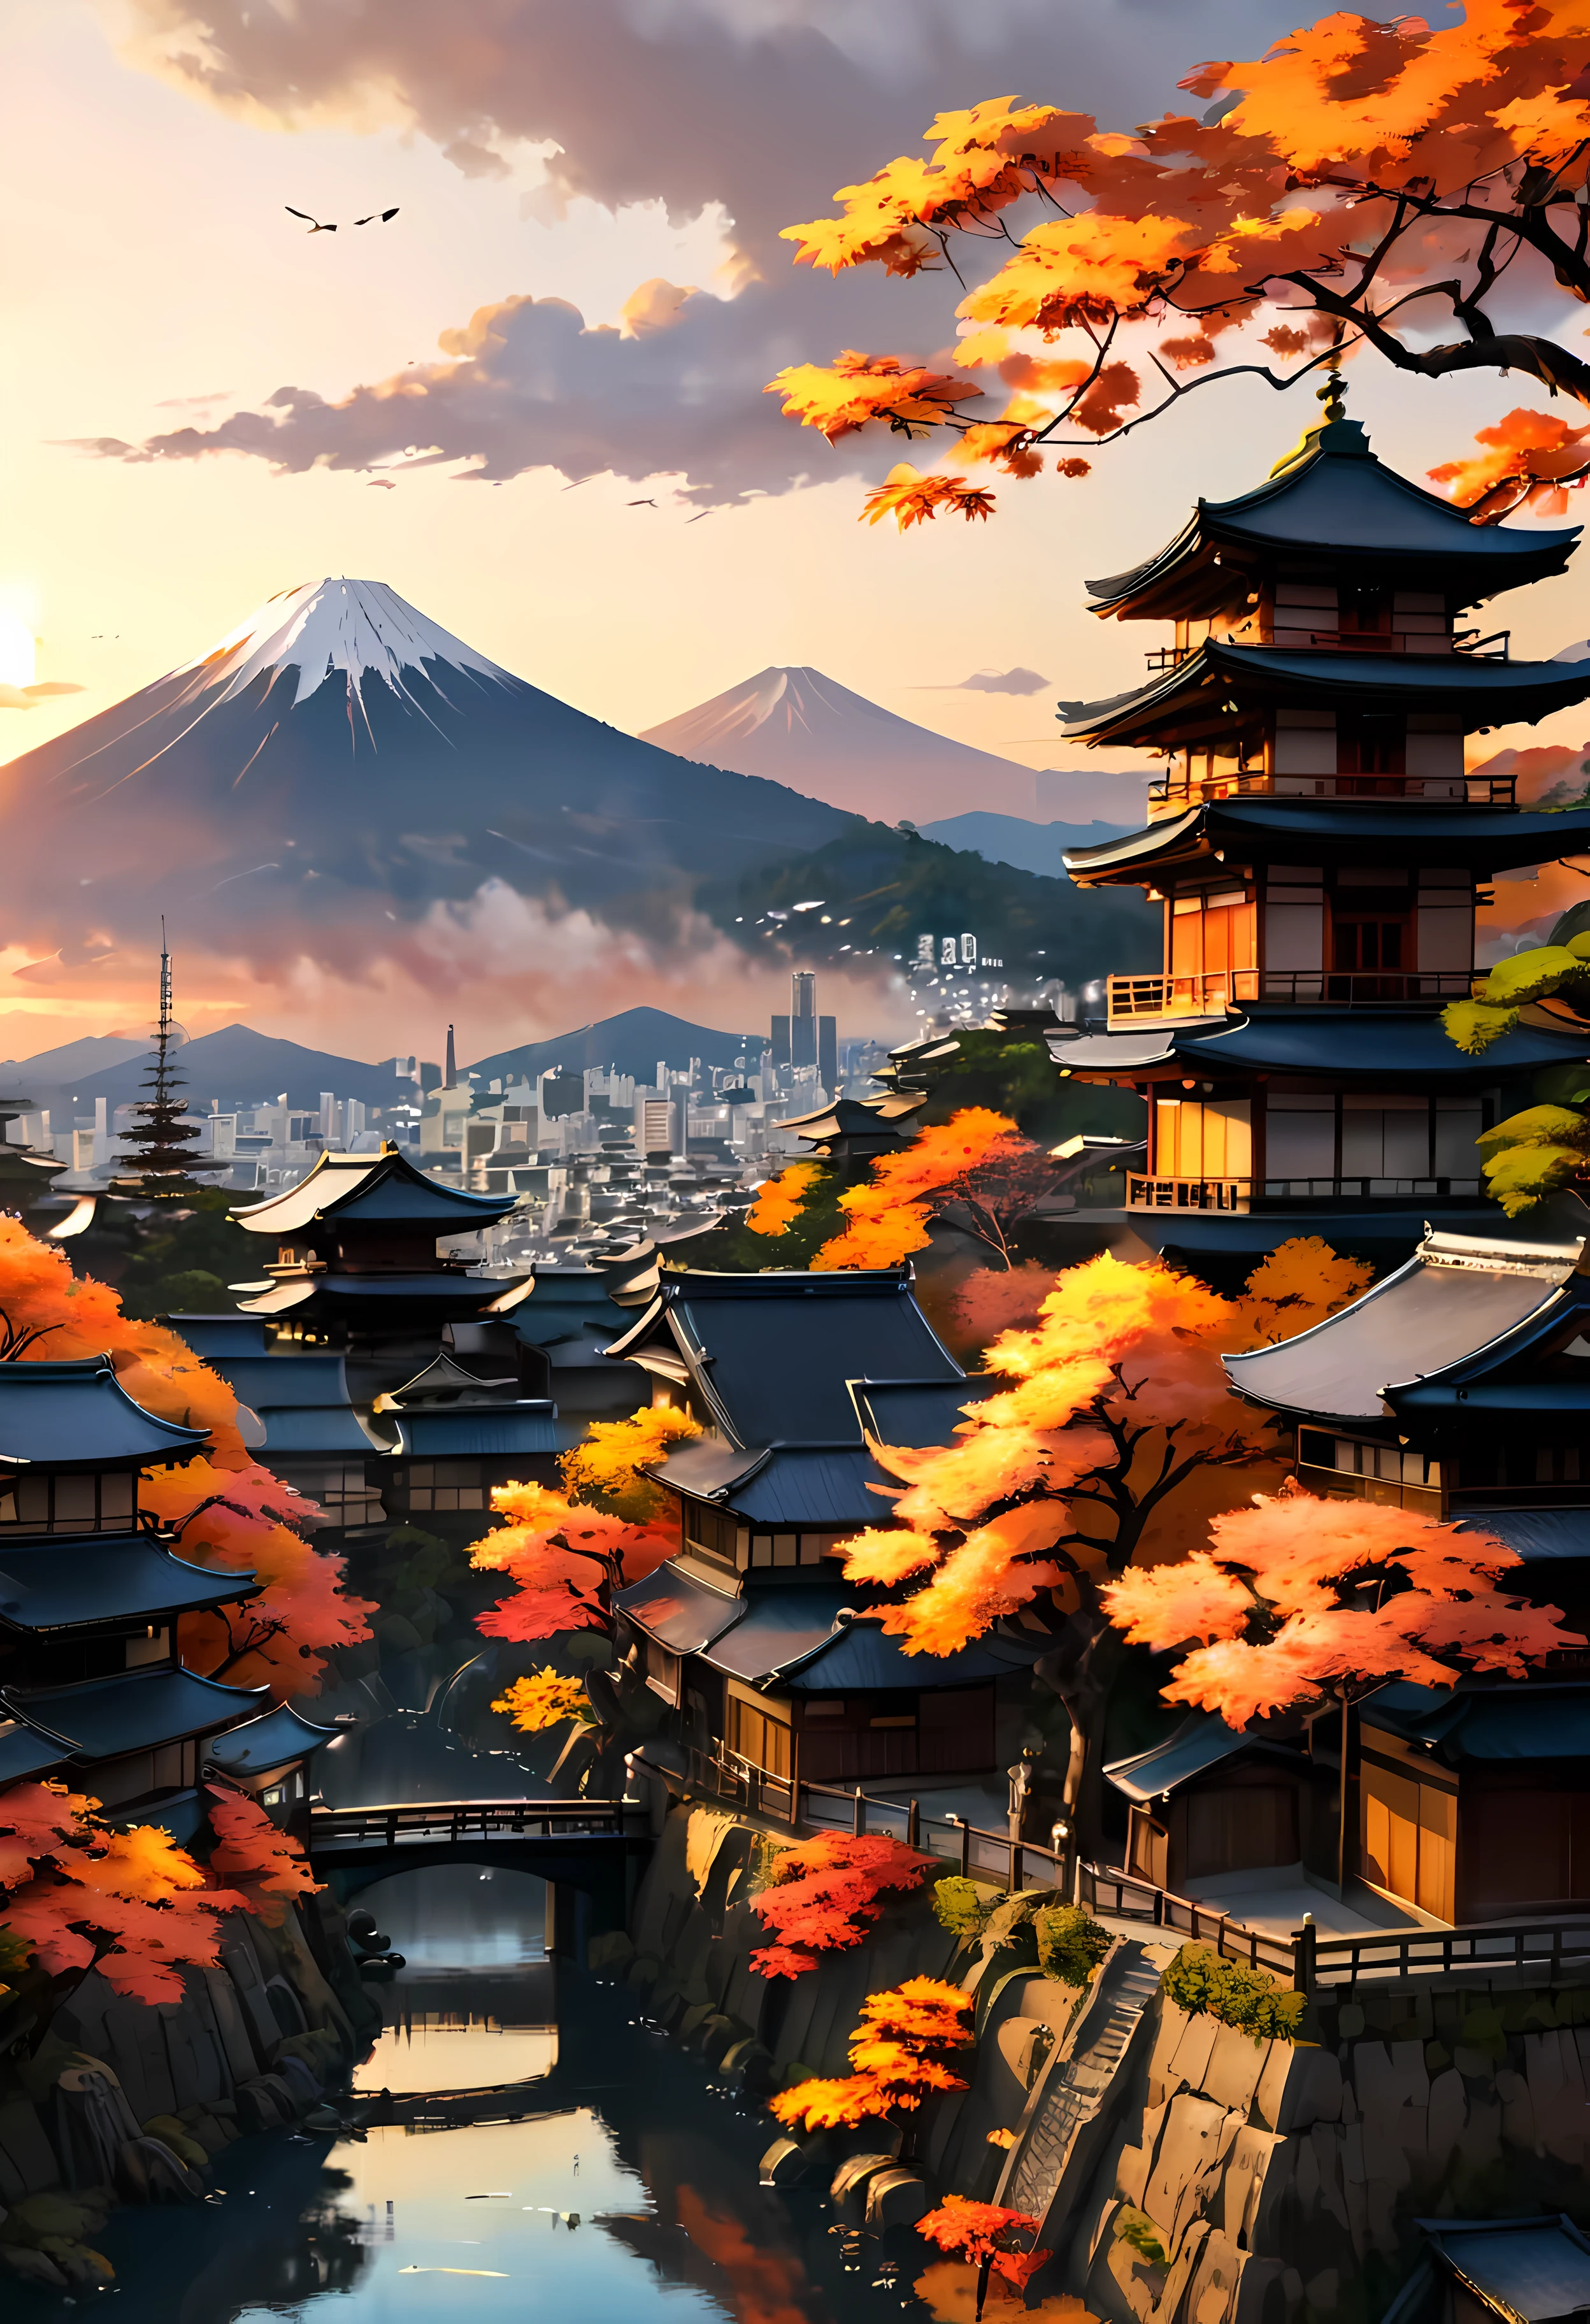 공원 테라스에 있는 붉은 가을 나무(Red Fall Tree)는 산의 전망을 감상할 수 있는 고대 도시 교토(Kyoto)를 내려다보고 있습니다., 일몰 빛에 둘러싸인 매혹적인 고대 도시 풍경,((골든아워 시간):1.2),((일본의 고대 도시):1.2),((가을의 일몰 하늘):1.1),섬세한 황금 시간 조명, 놀라운 배경화면, 아름다운 주변 환경, 낙관적인 매트 페인팅, 아름다운 디지털 작품, 일본의 고대 도시 background, 아름답고 상세한 장면, UHD 언더그라운드, UHD 풍경, 장엄한 컨셉 아트, 아름다운 고대 도시. |(최대 16K 해상도의 걸작), 최고의 품질, (매우 상세한 CG Unity 16k 배경화면 품질),(부드러운 색상의 16k 매우 상세한 디지털 아트),매우 상세한. | 완벽한 이미지,16k UE5,공식 그림, 지나치게 섬세한, 피사계 심도, 대비 없음, 깨끗하고 선명한 초점, 전문적인, 흐려짐 없음. | (((자세한 세부 사항))).